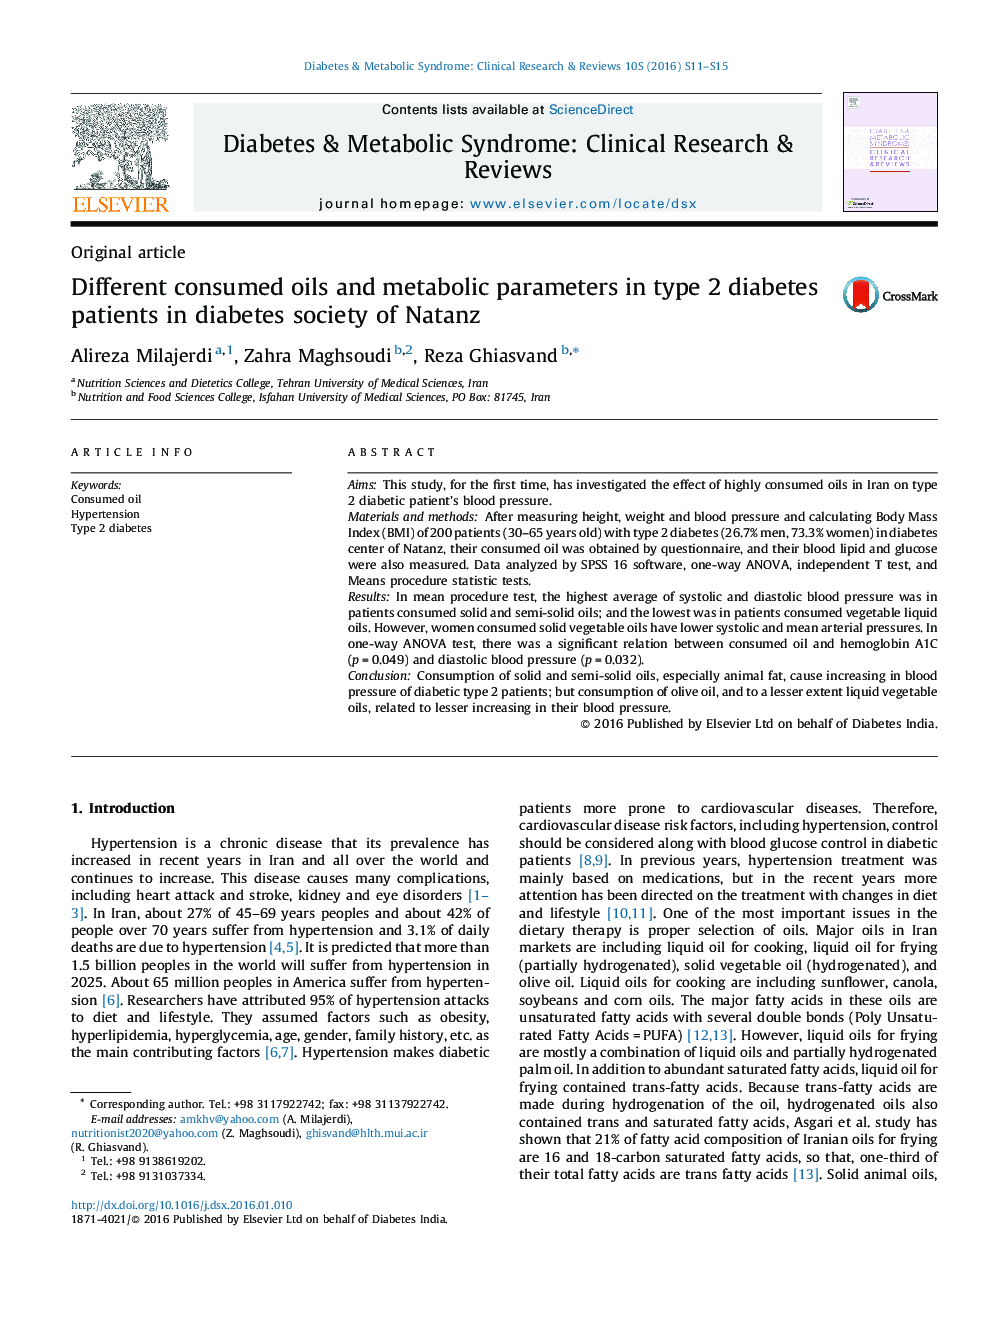 روغن‌های مختلف مصرفی و پارامترهای متابولیک در بیماران مبتلا به دیابت نوع 2 در جامعه دیابتی شهر نطنز